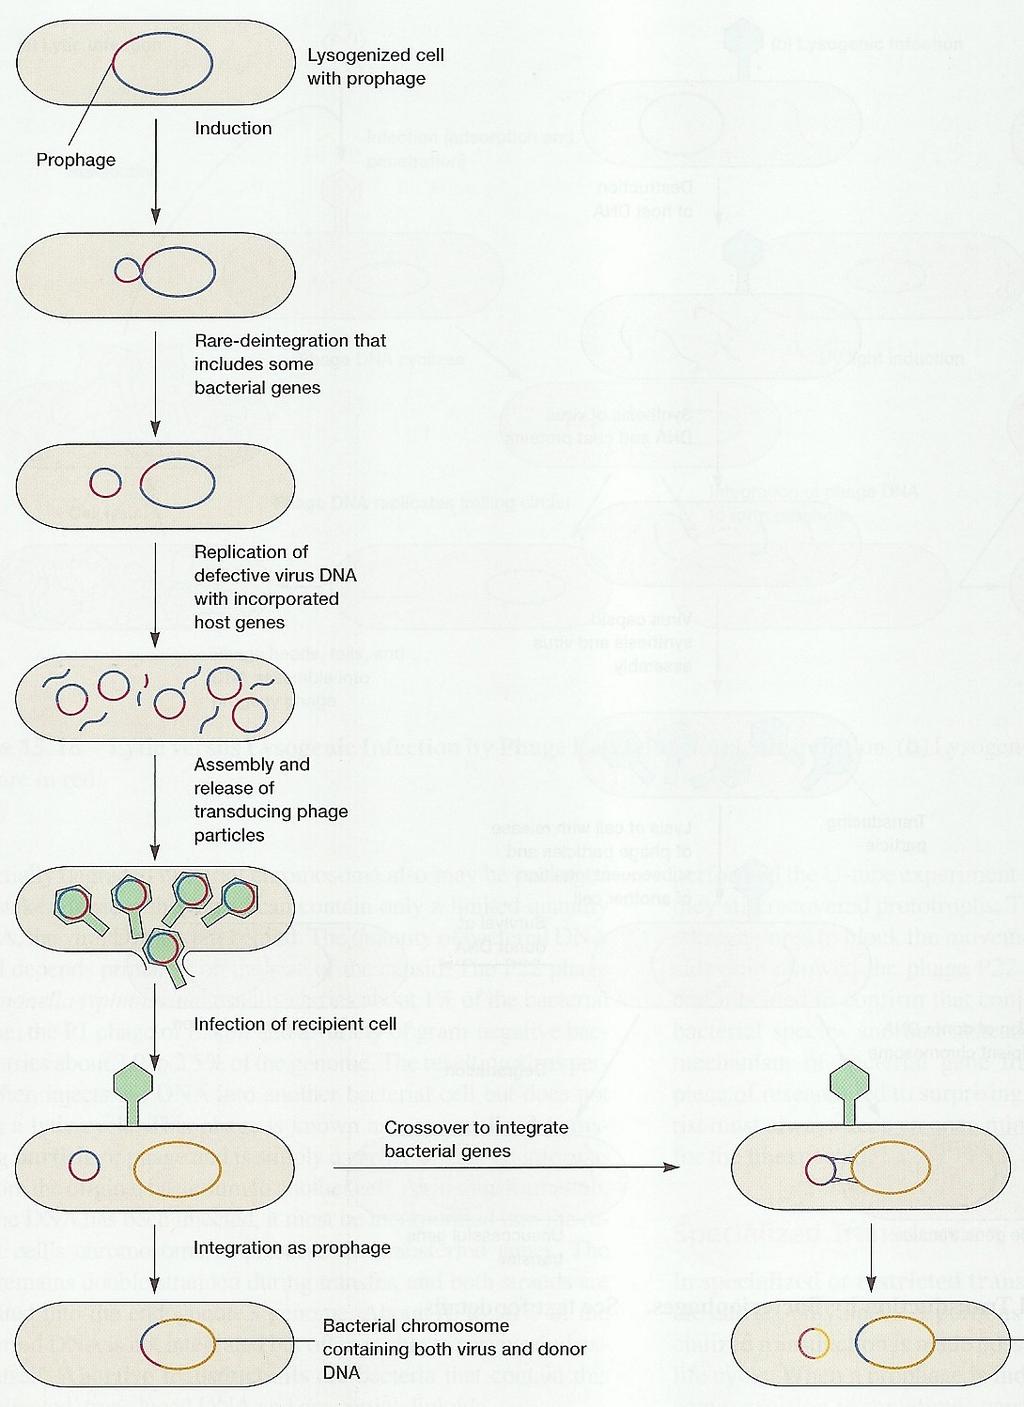 Transdukce - specifická lyzogenizovaná buňka s profágem profág indukce chybná excize (chromozom fága obsahuje bakteriální geny) replikace defektivní DNA fága a inkorporace do hostitelské buňky